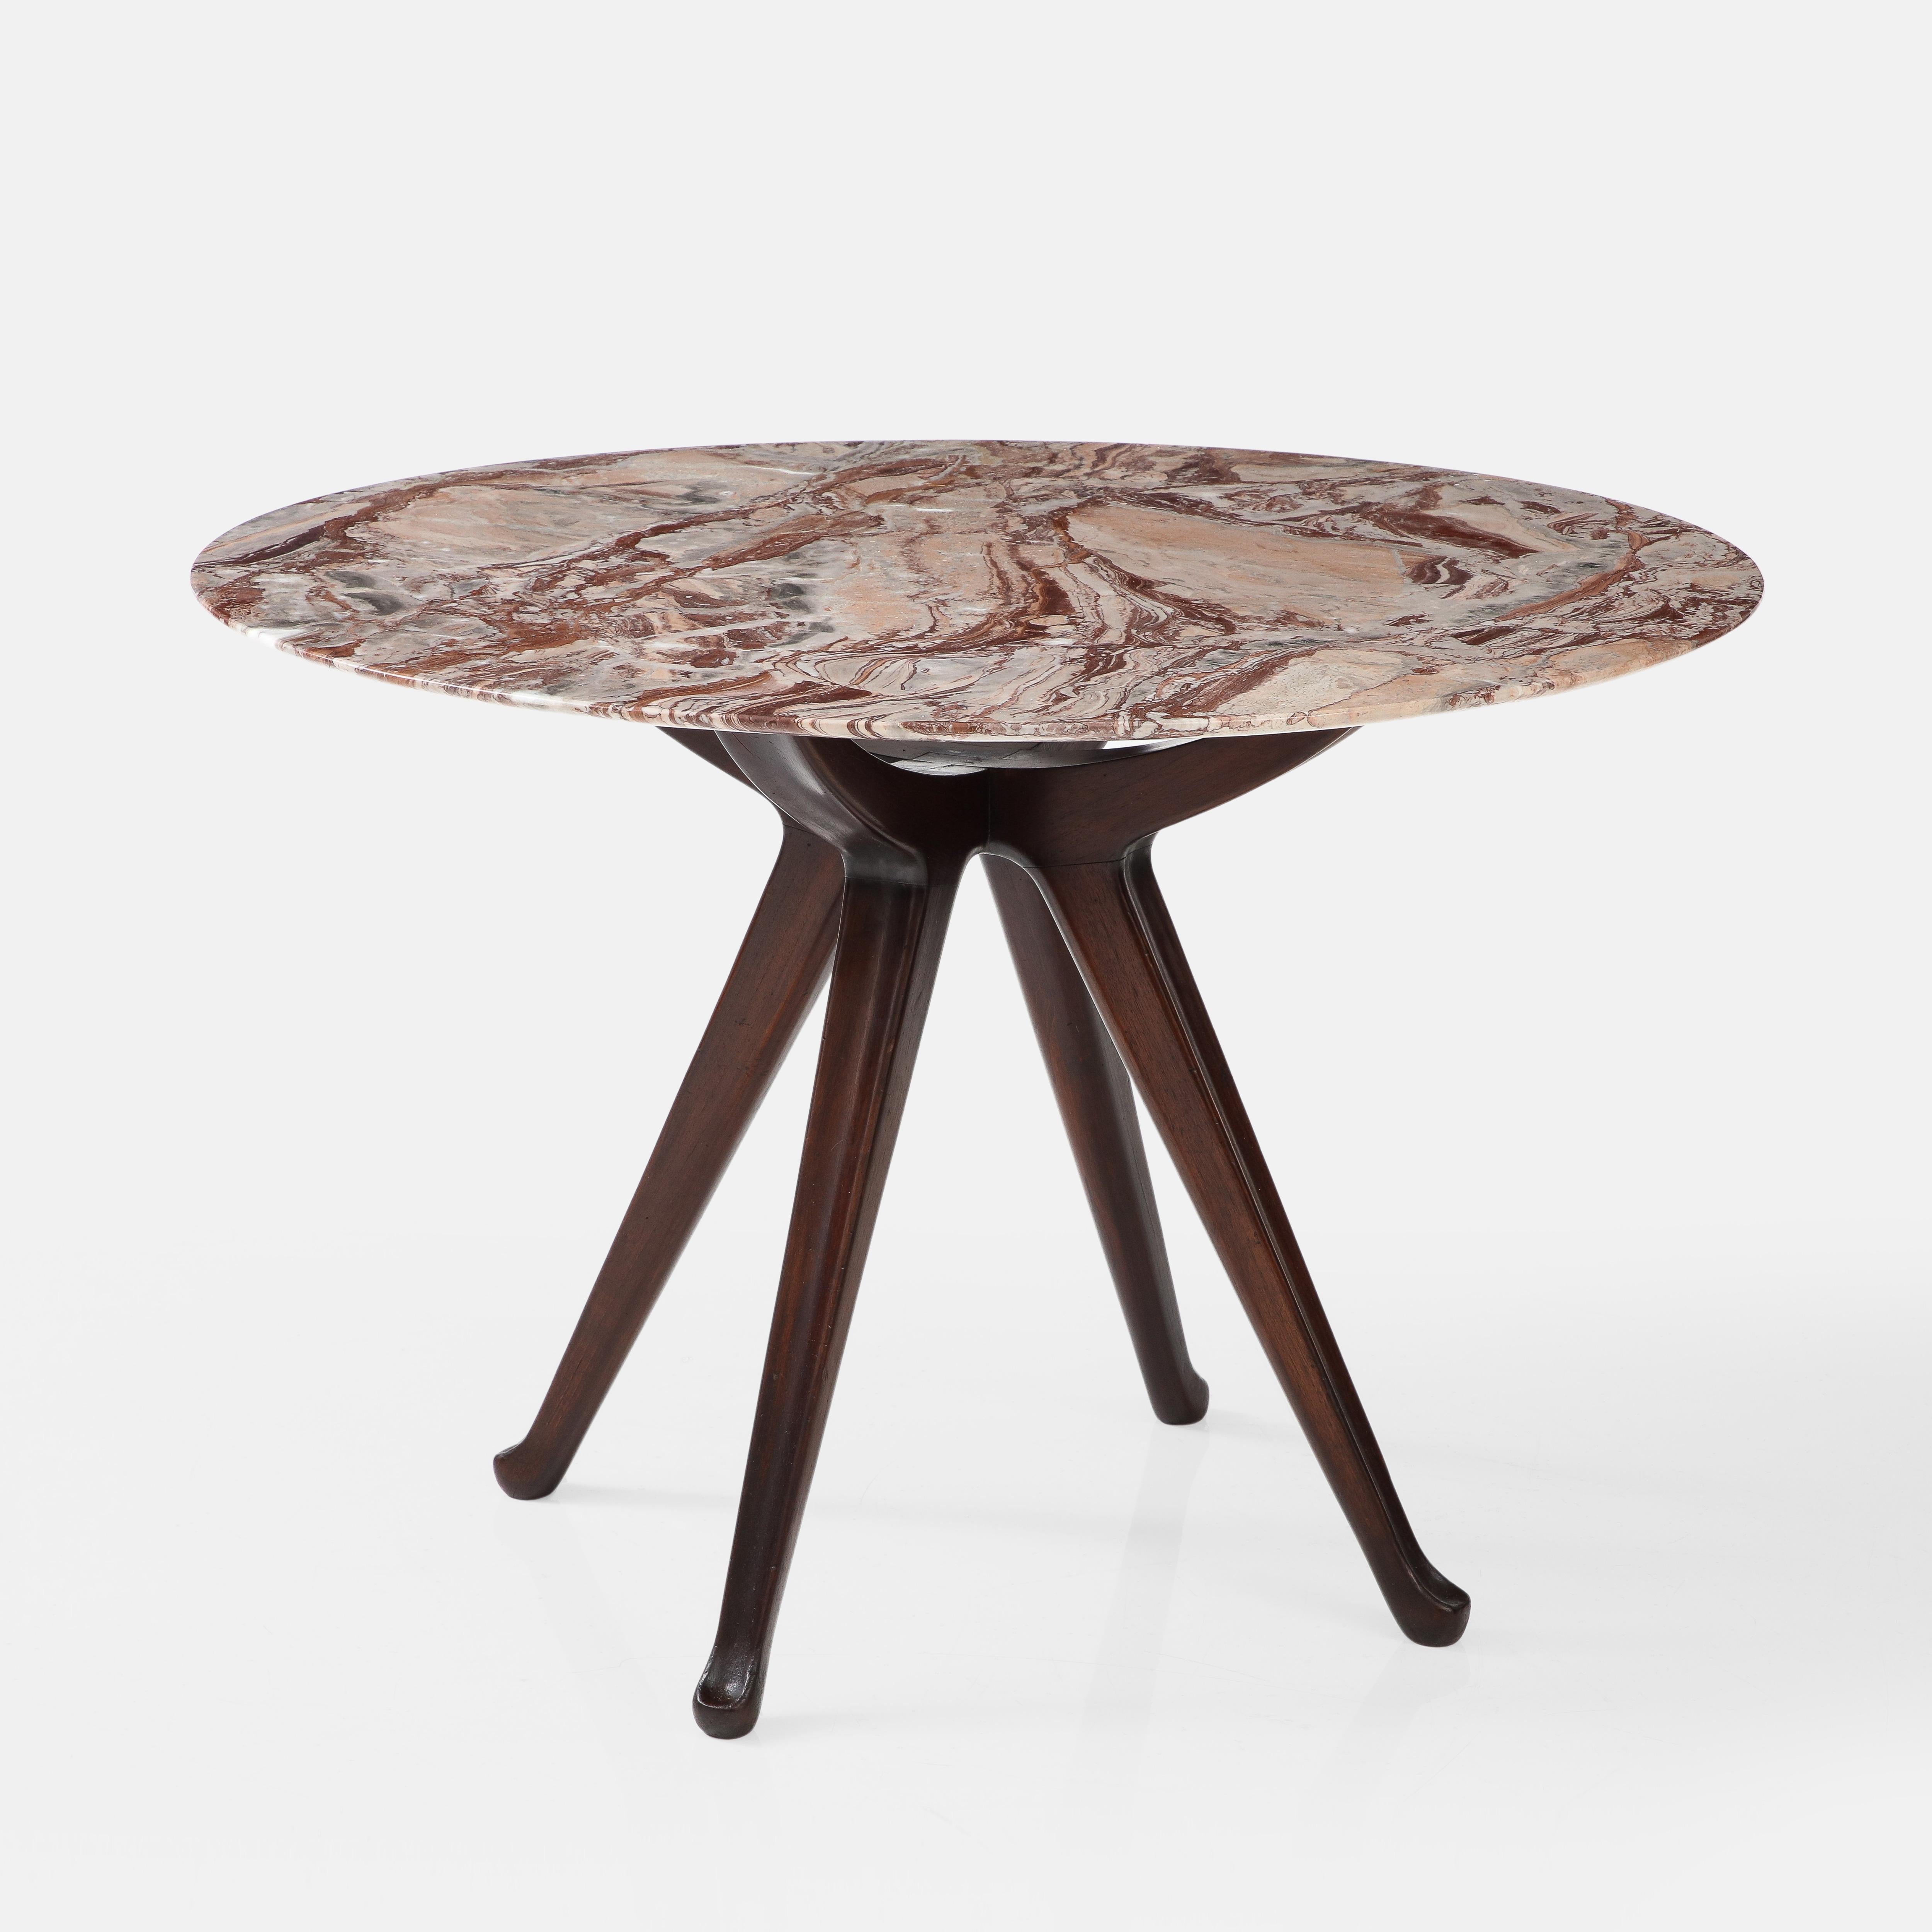 Rare table de salle à manger ou de centre Osvaldo Borsani pour ABV Arredamenti Borsani Varedo modèle 7387 avec plateau en marbre circulaire d'origine magnifiquement grainé reposant sur une base sculpturale en bois sculpté d'acajou teinté